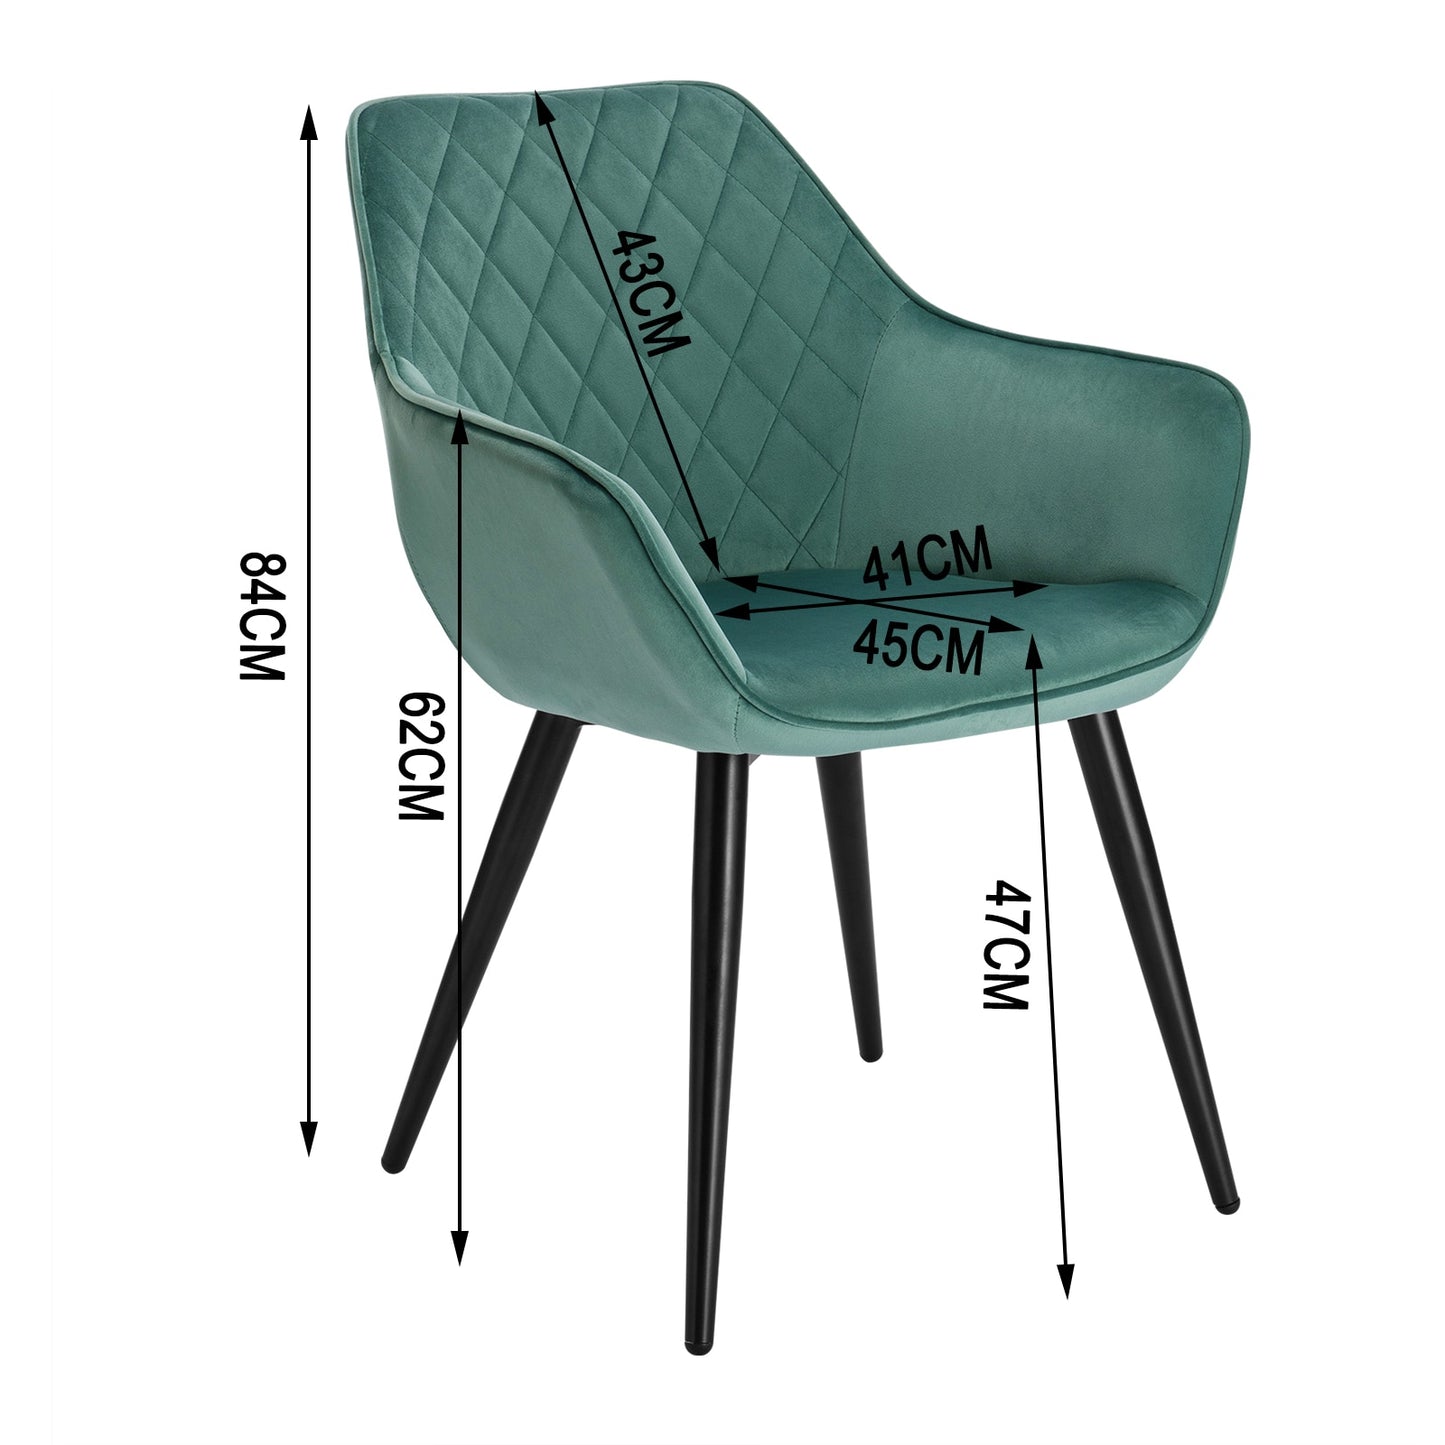 Moderner Esszimmerstuhl mit Armlehnen, gepolstert in verschiedenen Farben, weicher Stuhl für Wohnzimmer & Esszimmer - Unique Outlet